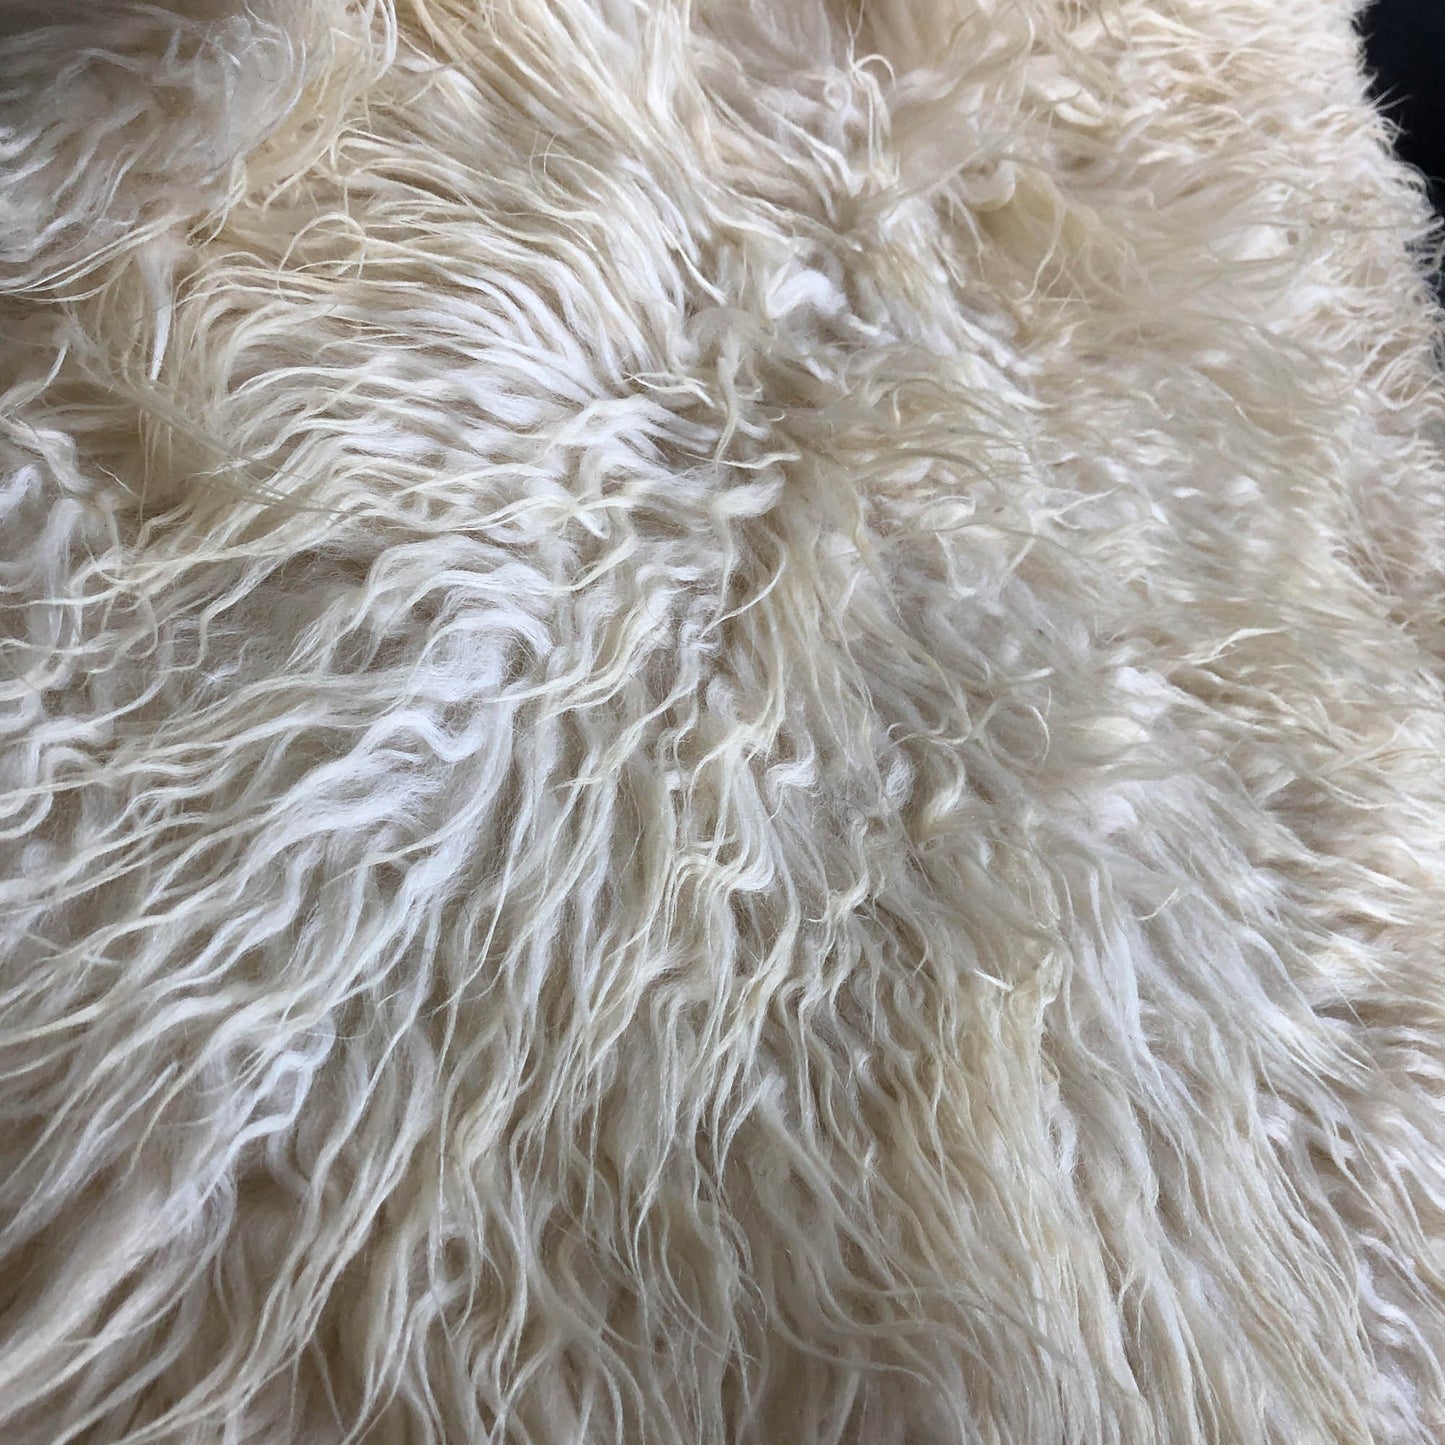 Icelandic Curly White Sheepskin Rug 100% Natural Sheep Skin Throw - Wildash London